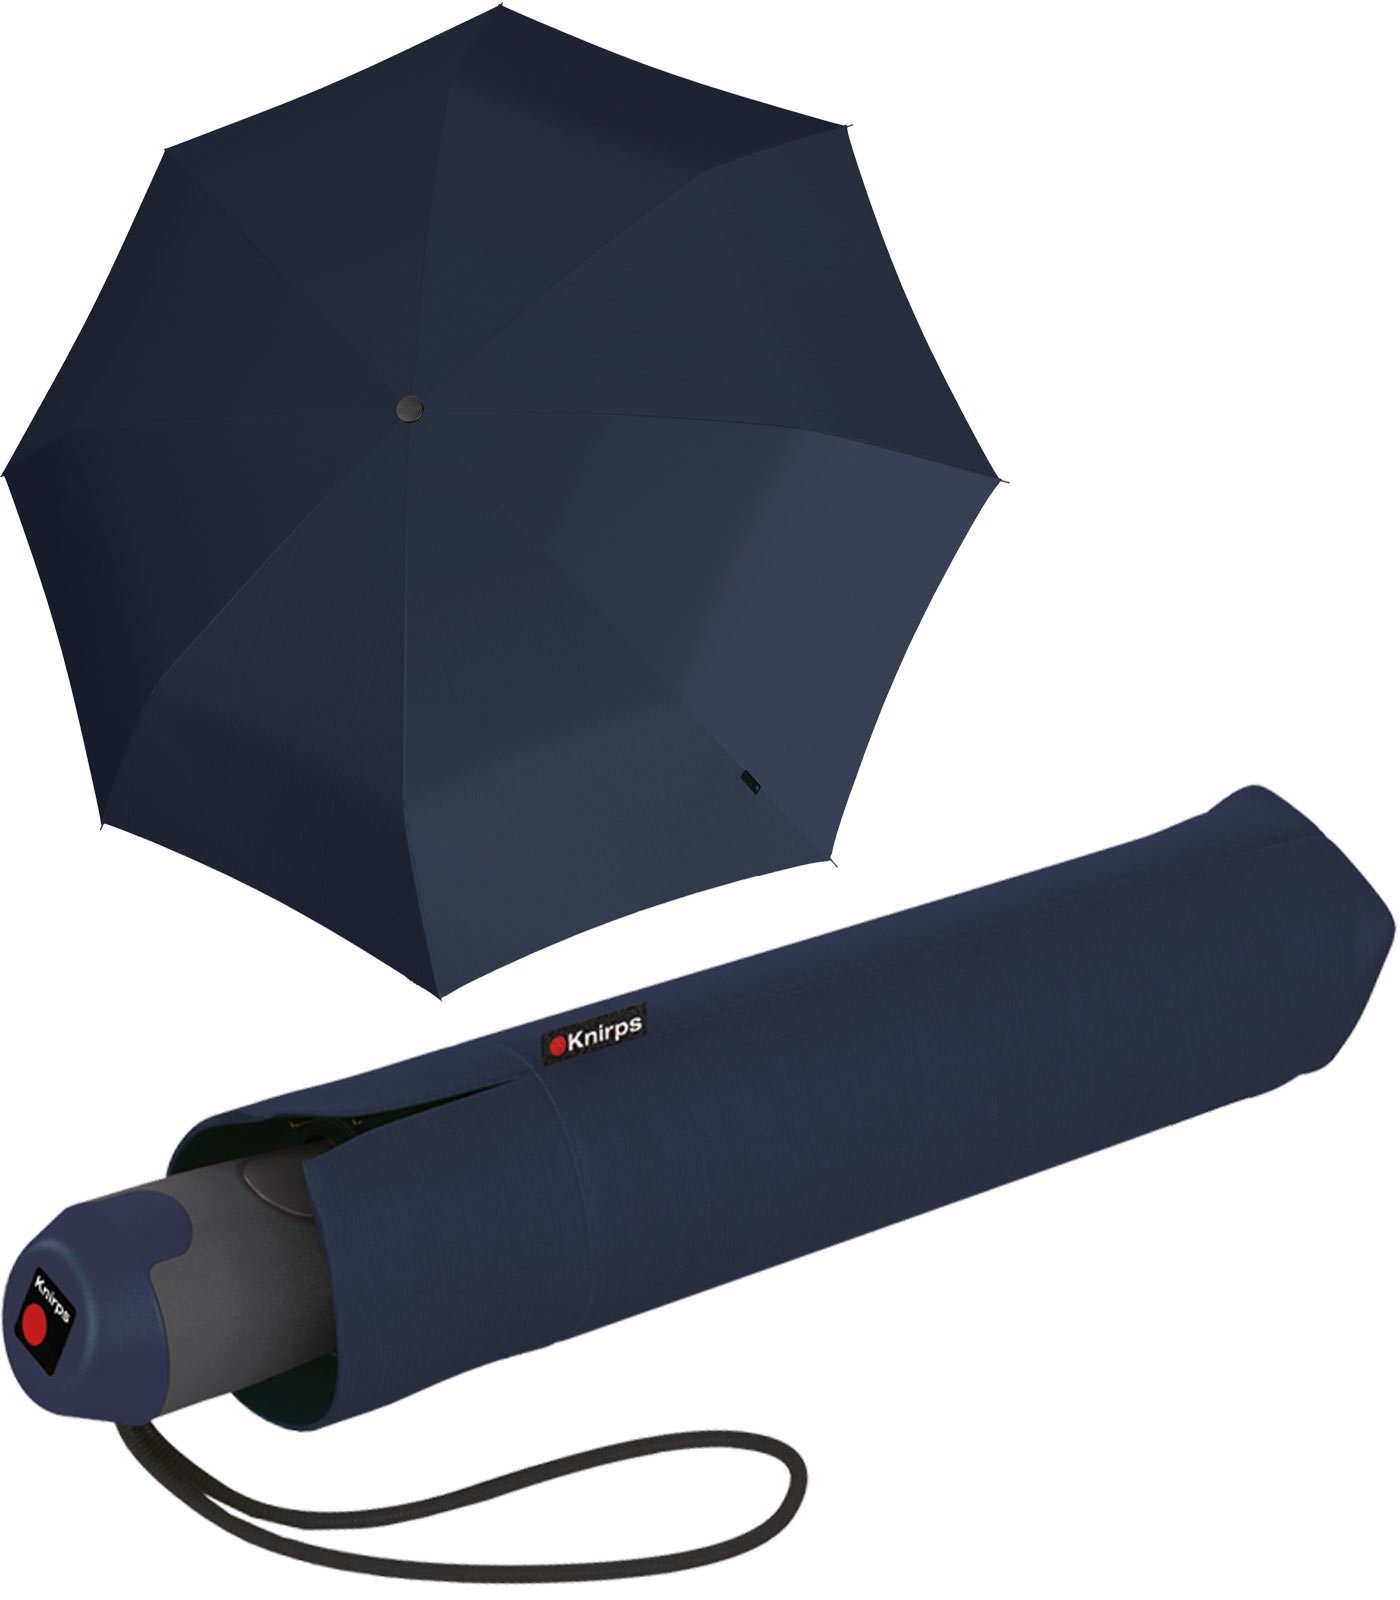 mit navy Knirps® Duomatic und elegant Auf-Zu-Automatik, stabil blau E.200 Schirm Taschenregenschirm